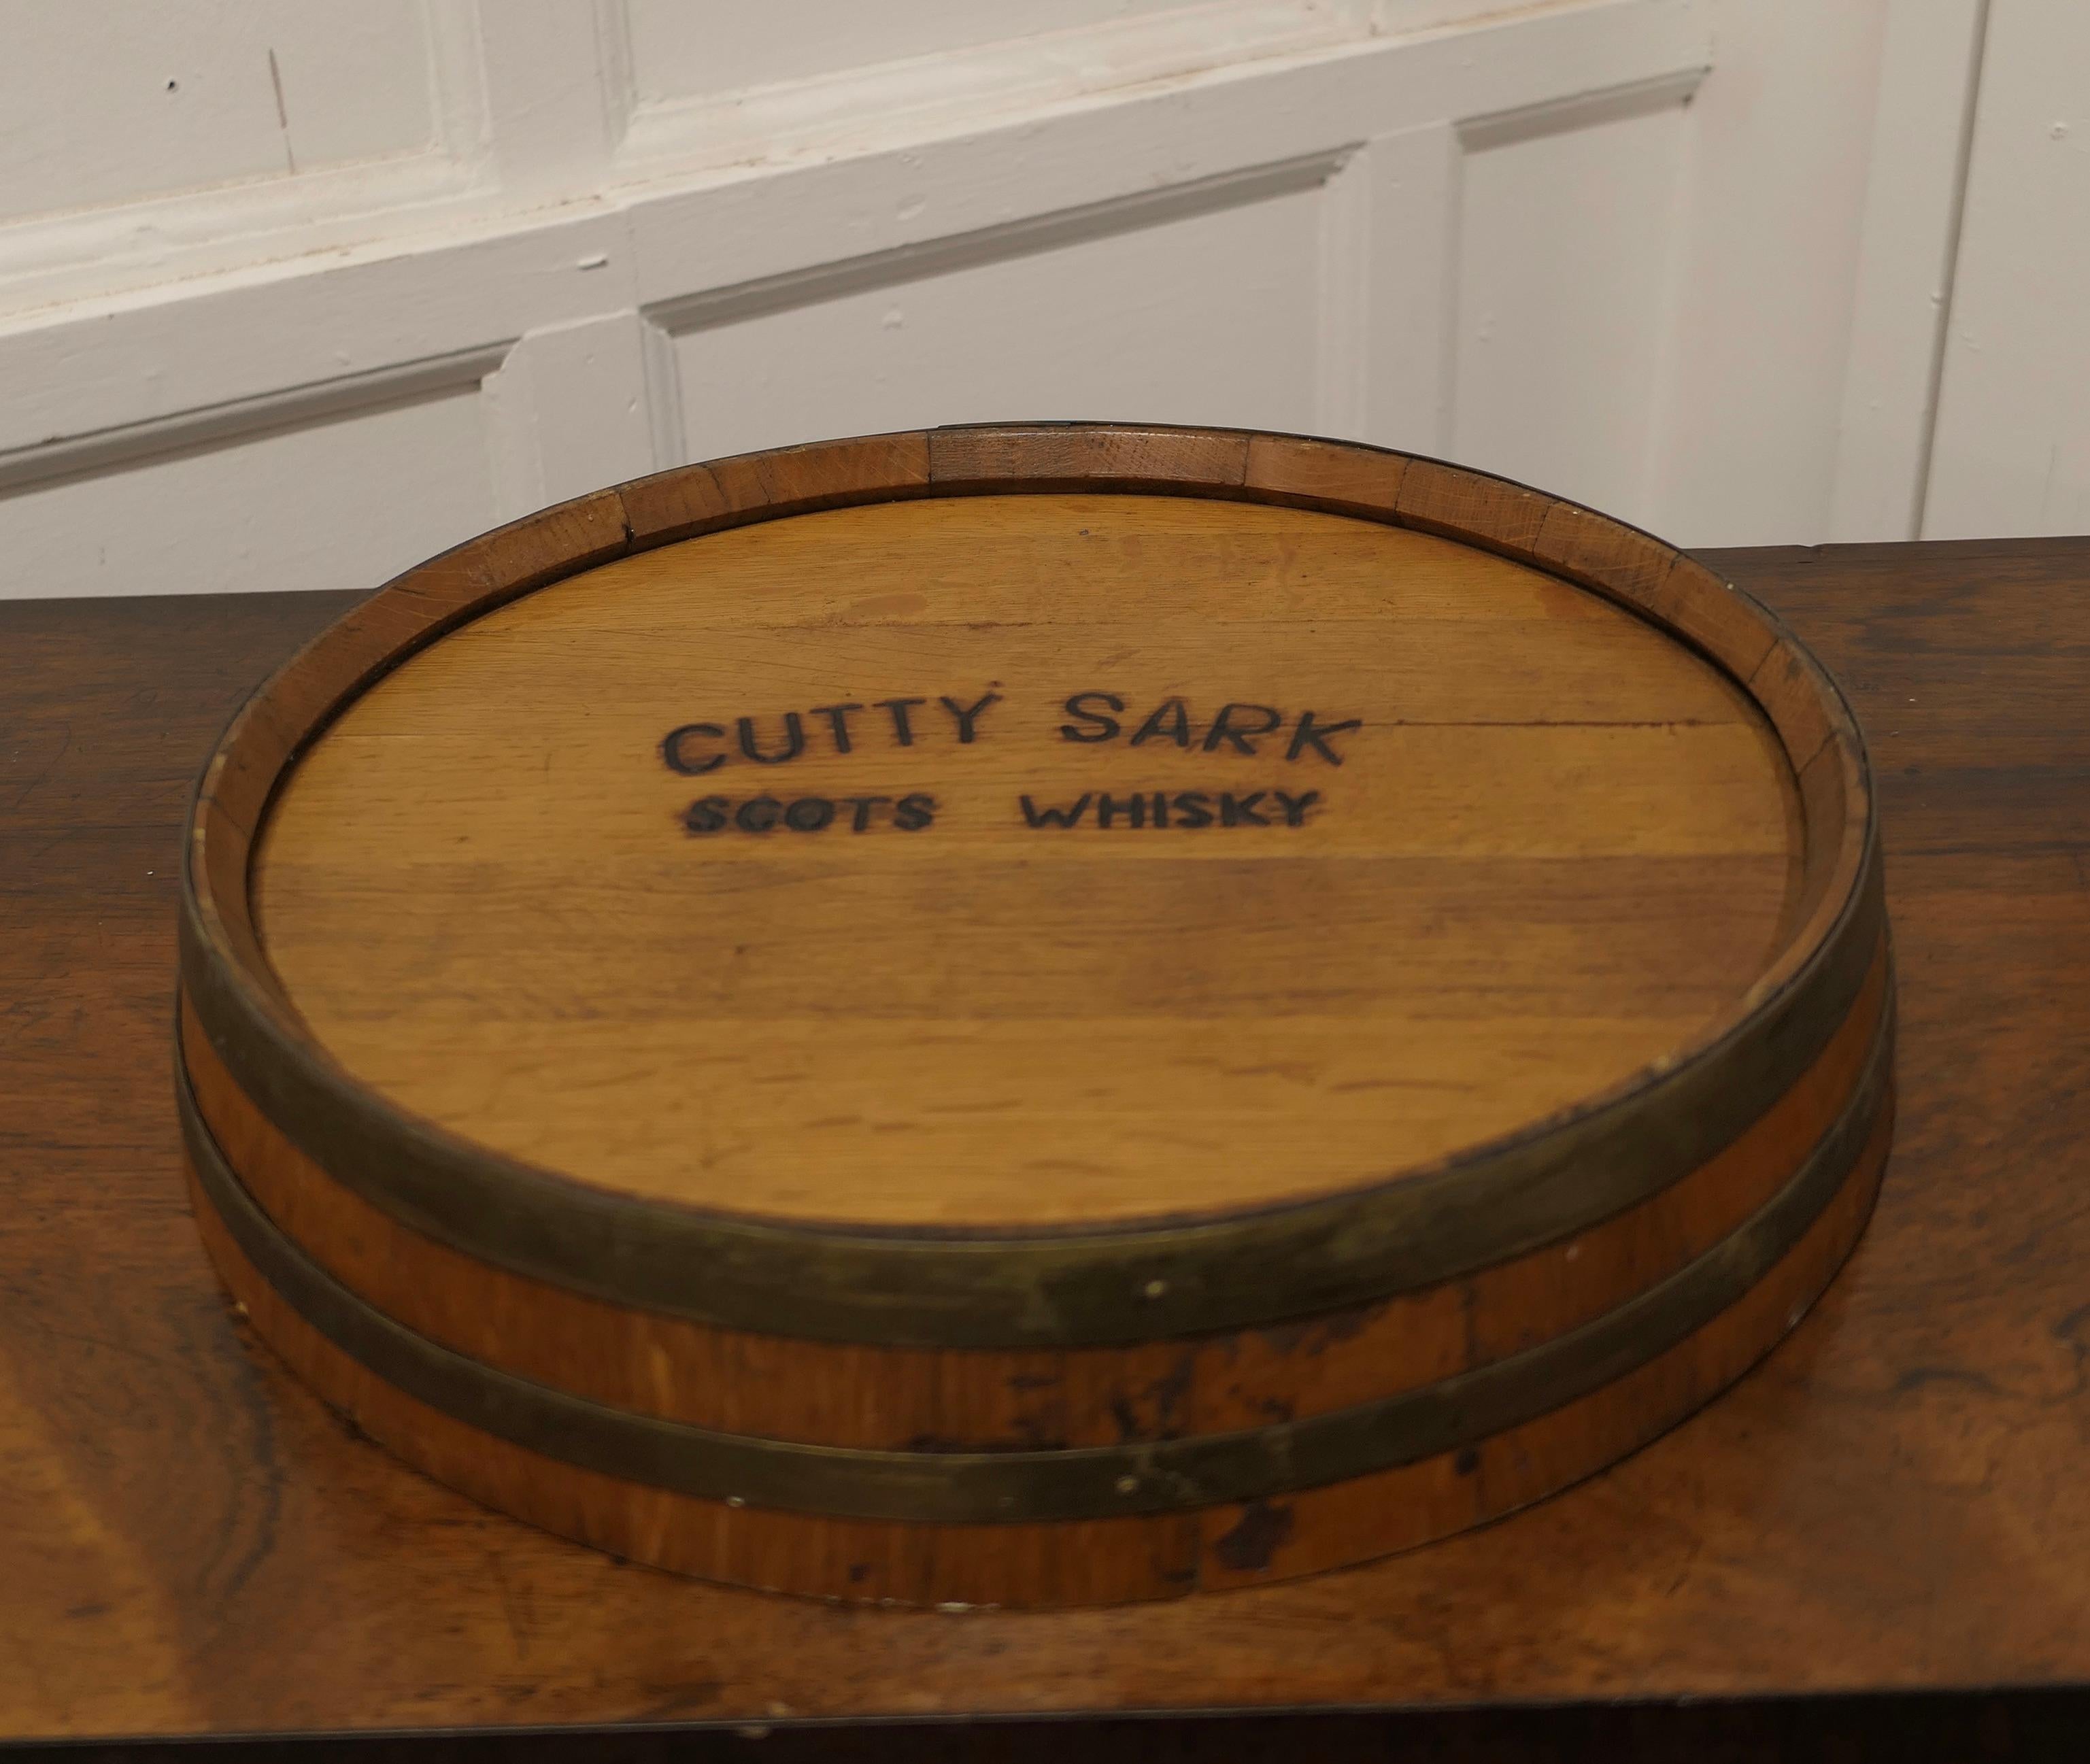 Plateau supérieur Cutty Cutty Sark Scots Whisky Barrel

Une belle pièce, fabriquée en chêne doré et reliée en laiton, ce plateau en forme de tonneau aurait eu une place de choix sur le bar pour servir un ou deux verres.  
Le plateau est doté de